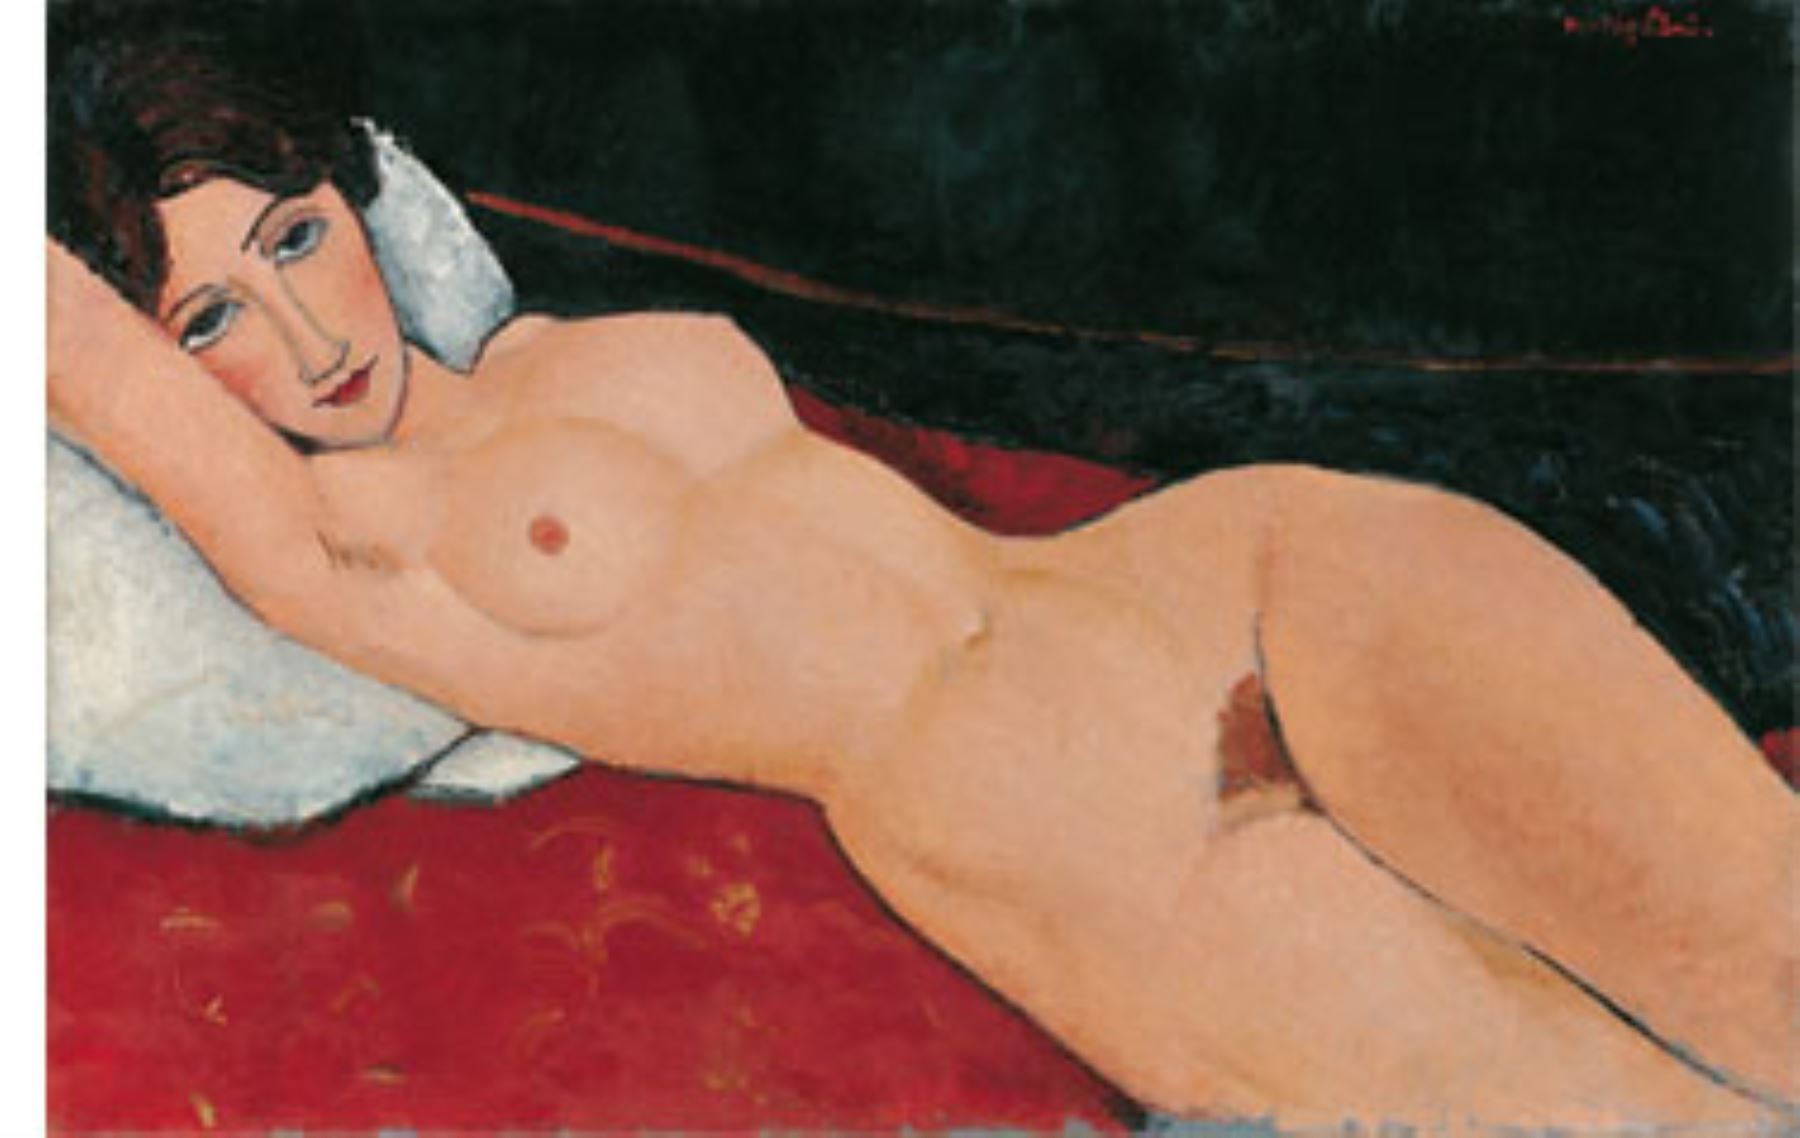 2- Amedeo Modigliani, "Desnudo acostado", vendido por 170,4 millones de dólares el 9 de noviembre de 2015 en Christie